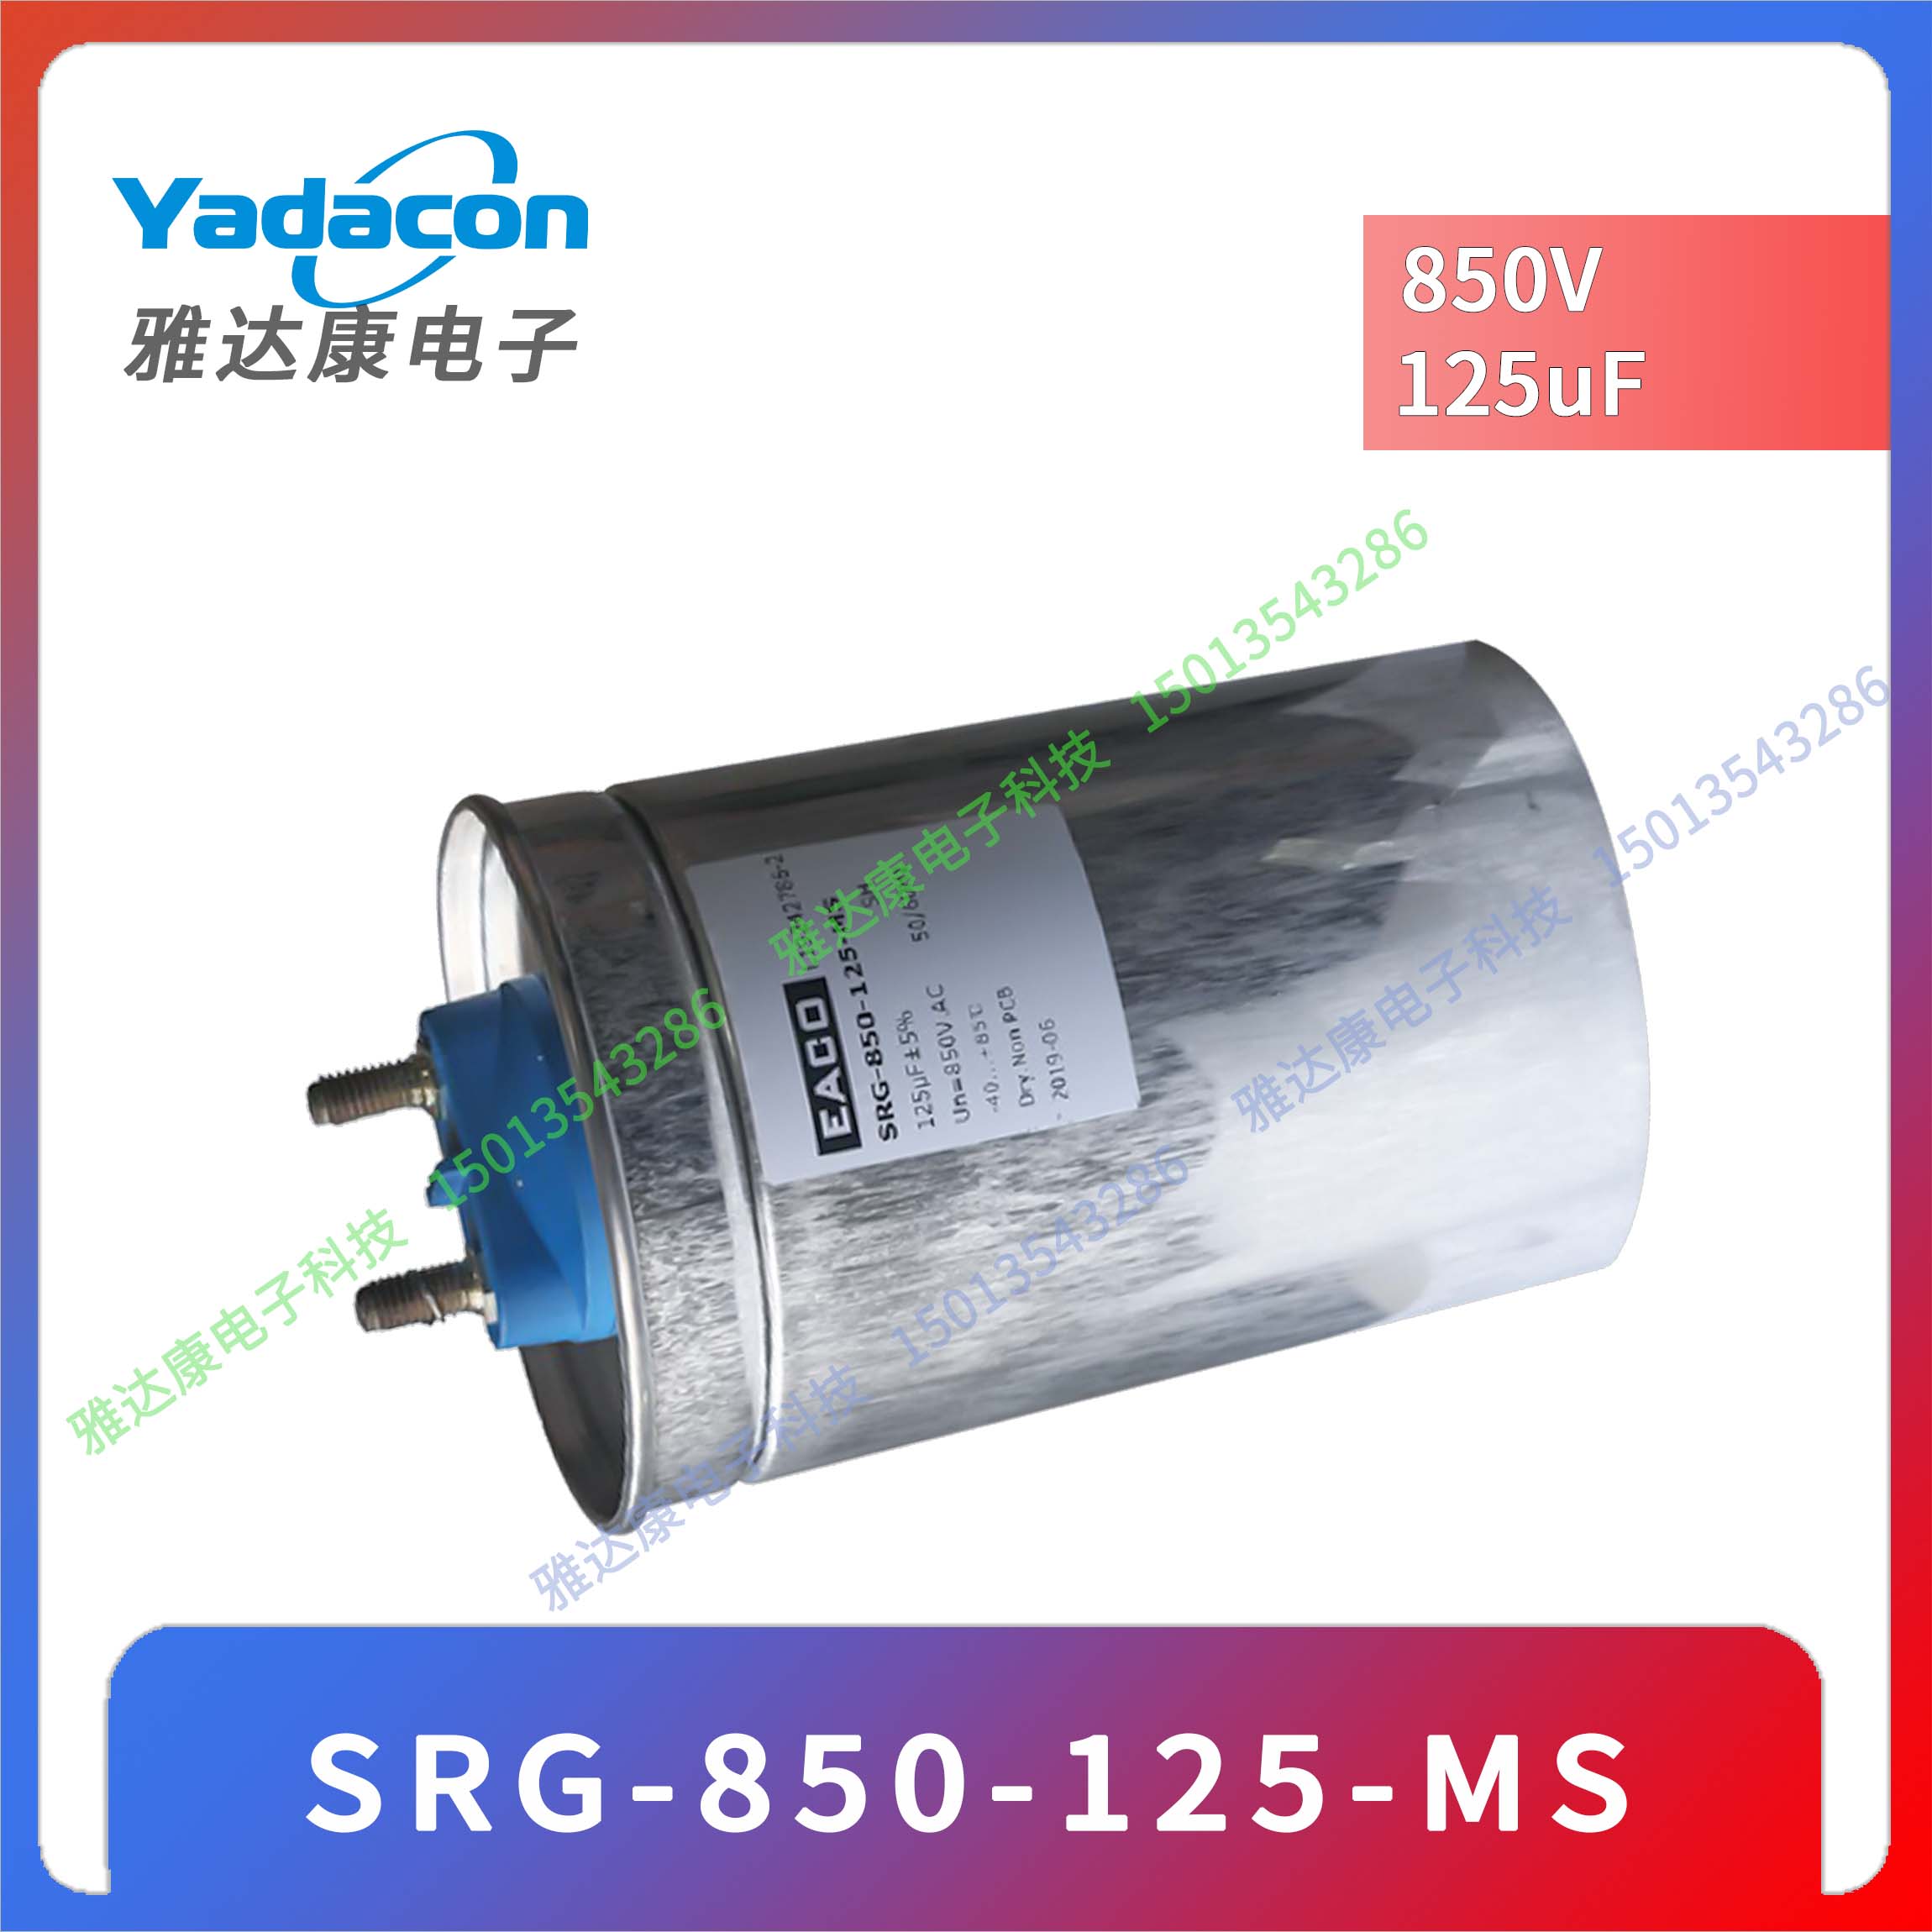 EACO薄膜电容 SRG-550-125-MS 550v125uF 尺寸116×150mm 2.08 kg - 图1